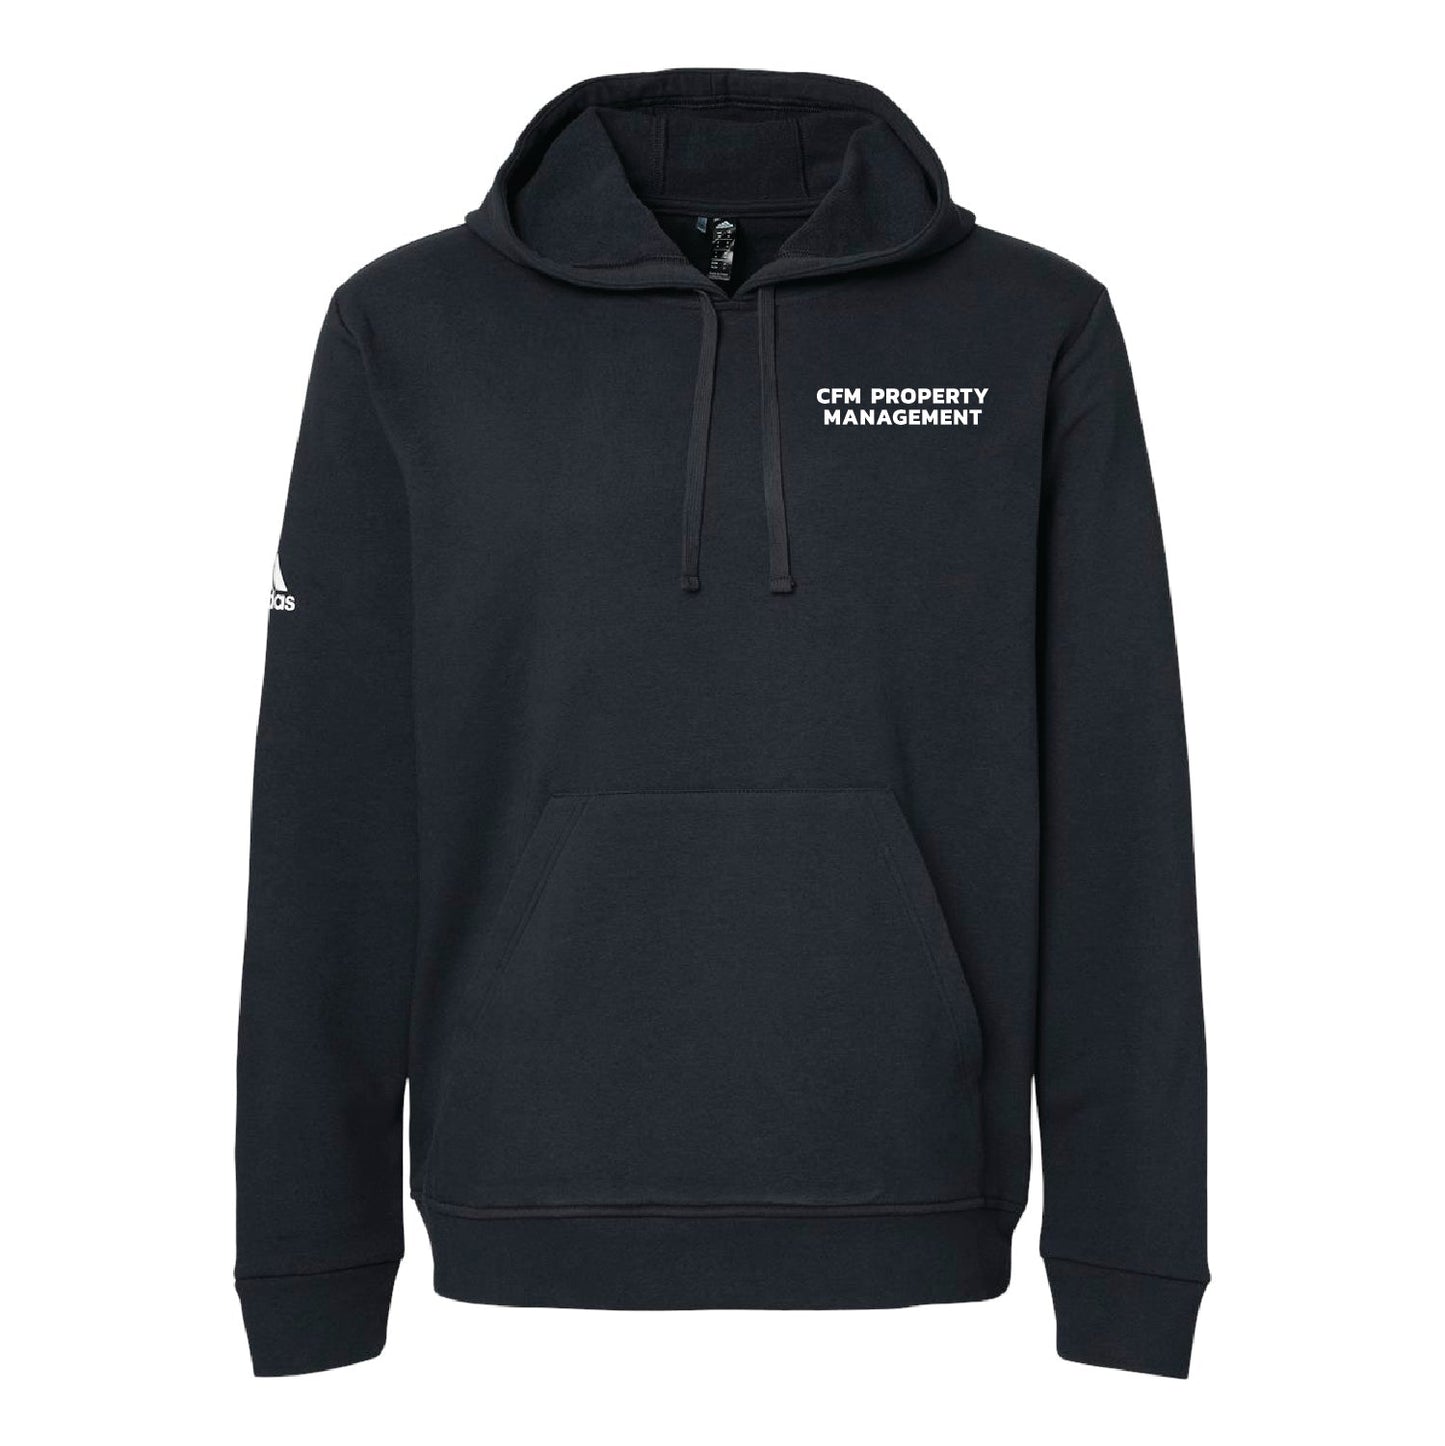 CFM 3 Adidas Fleece Hooded Sweatshirt - DSP On Demand